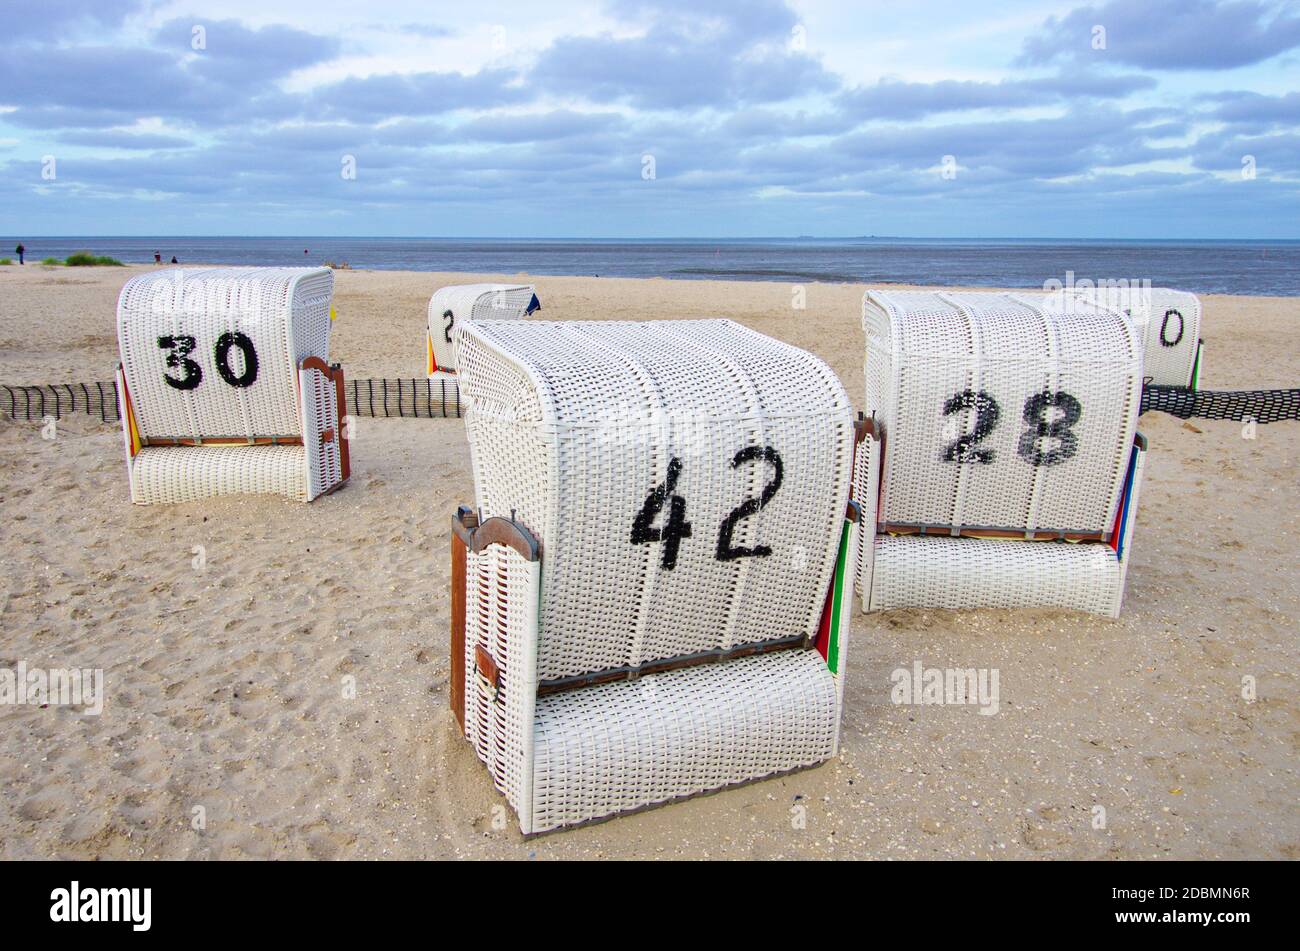 Einsame Strandkörbe am Strand der Nordsee mit der Zahl 42 vor Wolkenhimmel auf Sand Banque D'Images